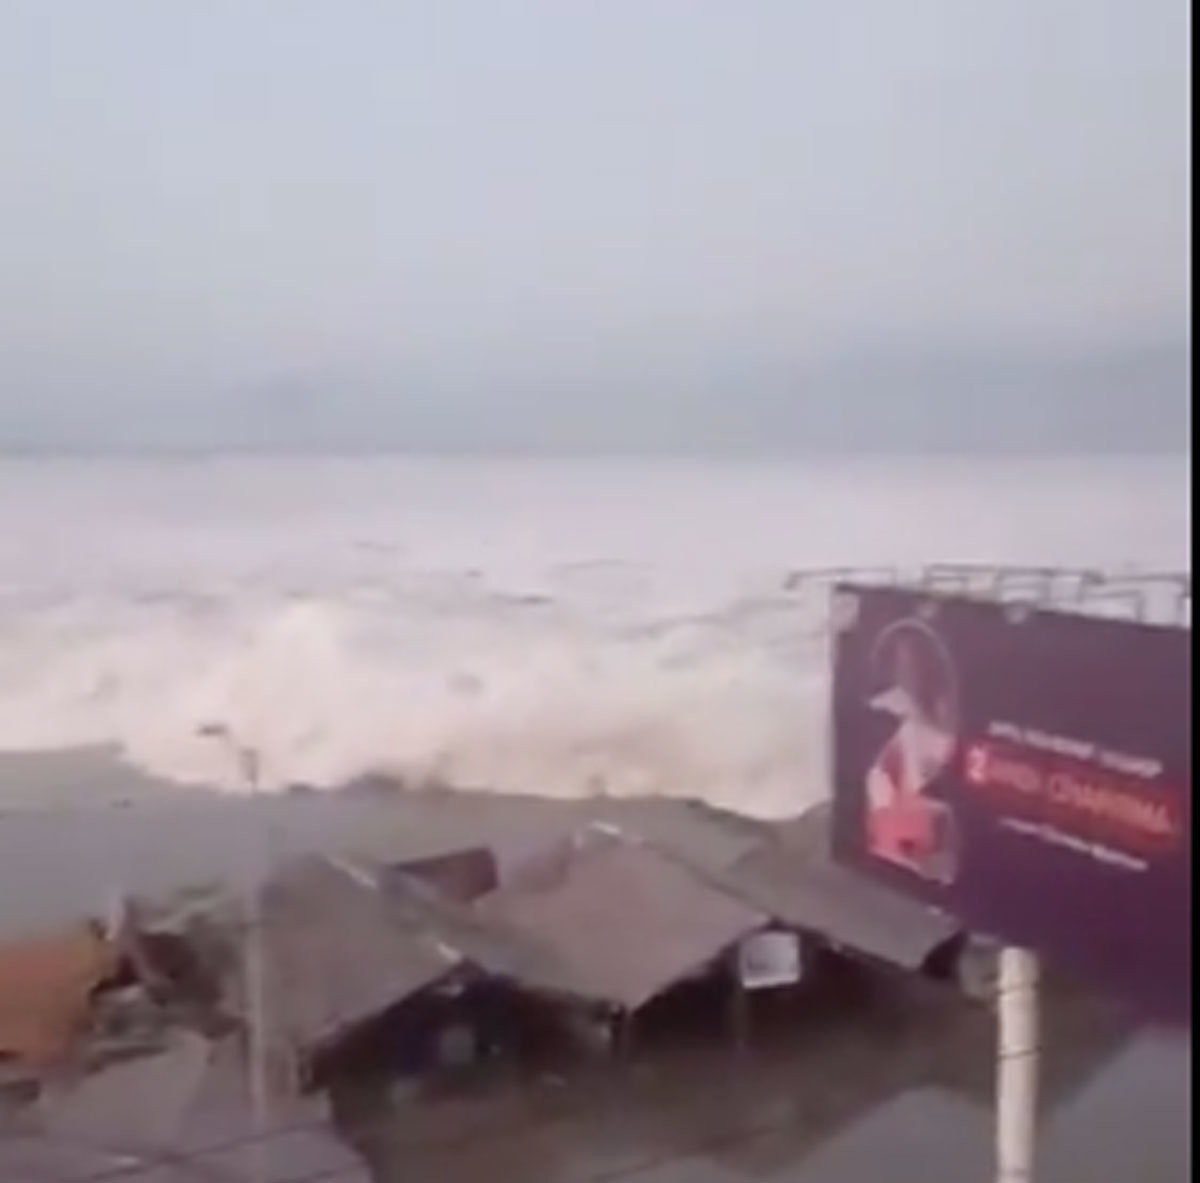 Τσουνάμι δυο μέτρων χτύπησε την Ινδονησία! [video]